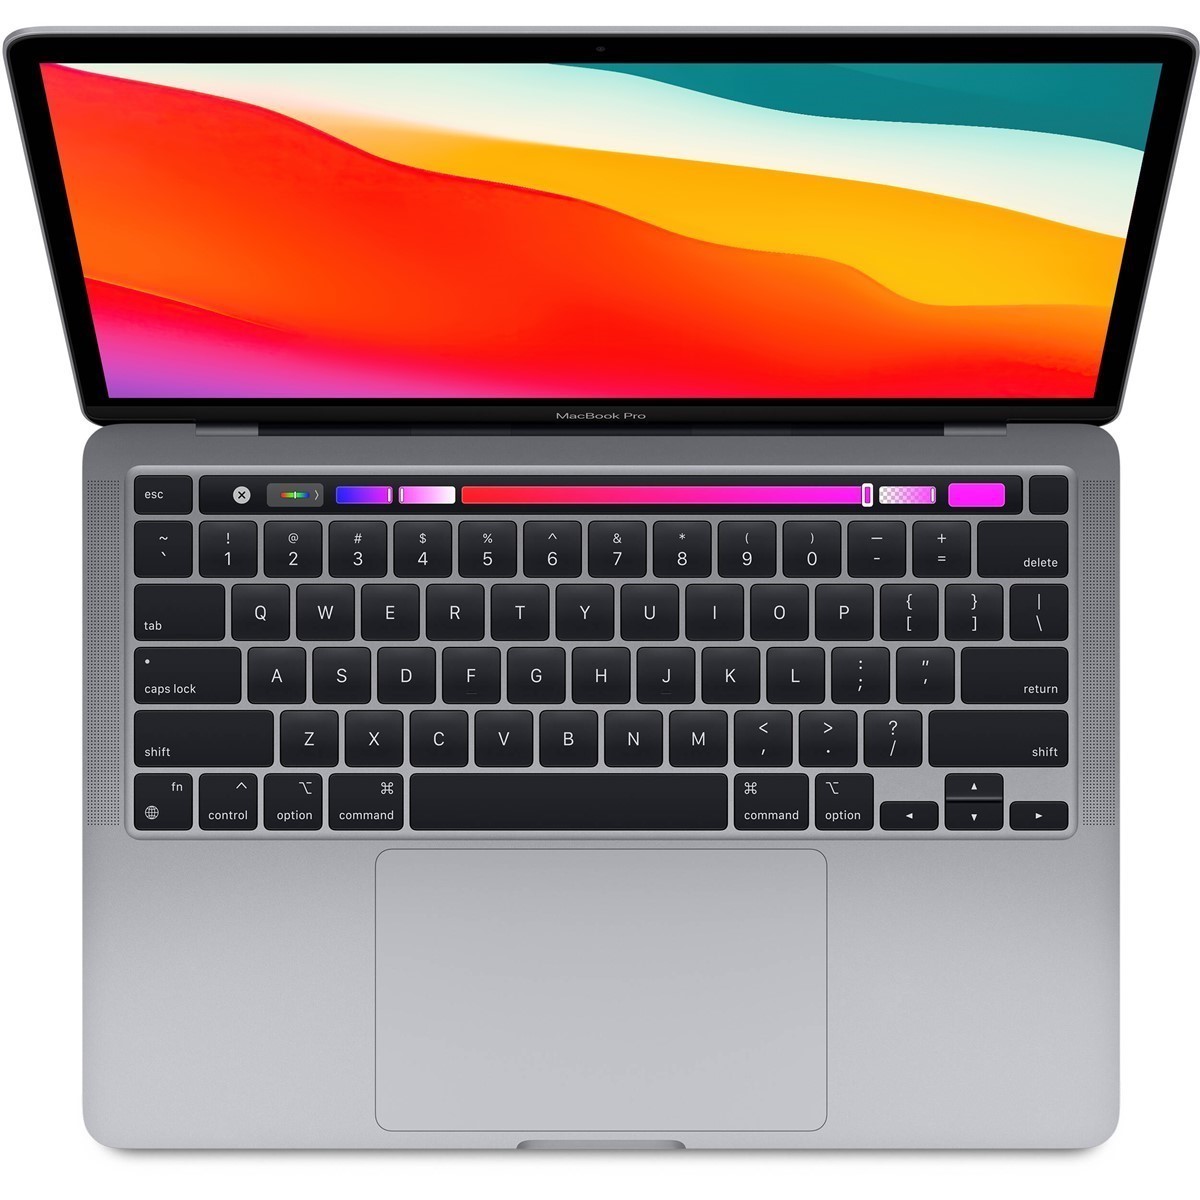 لپ تاپ 13 اینچی اپل مدل MacBook Pro CTO M1-16-512 2020 همراه با تاچ بار